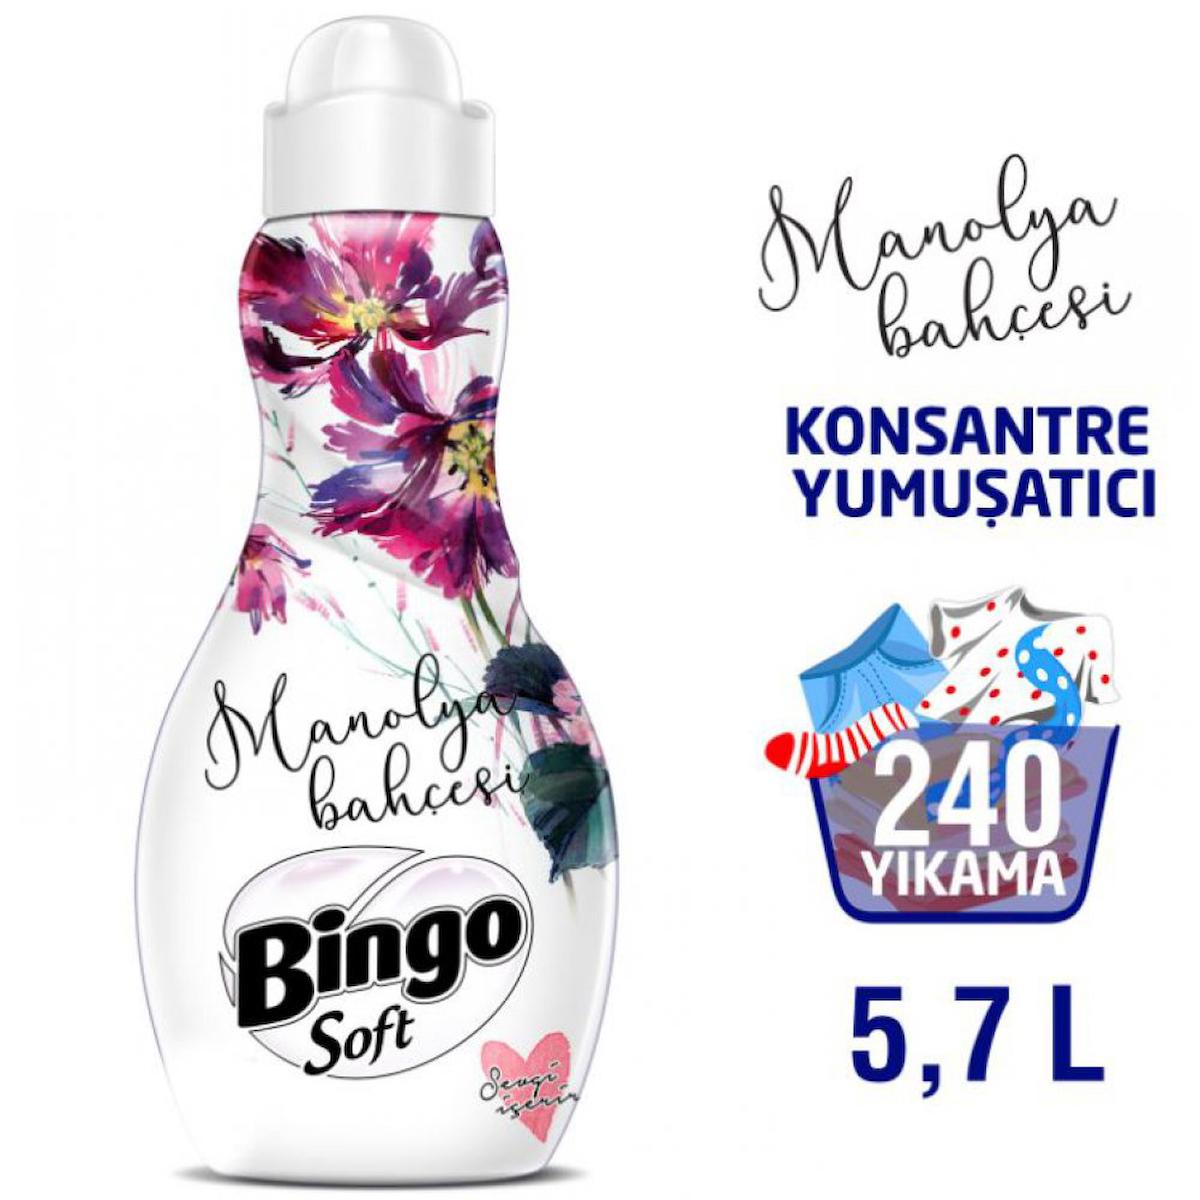 Bingo Soft Manolya 60 Yıkama Yumuşatıcı 4x1.44 lt